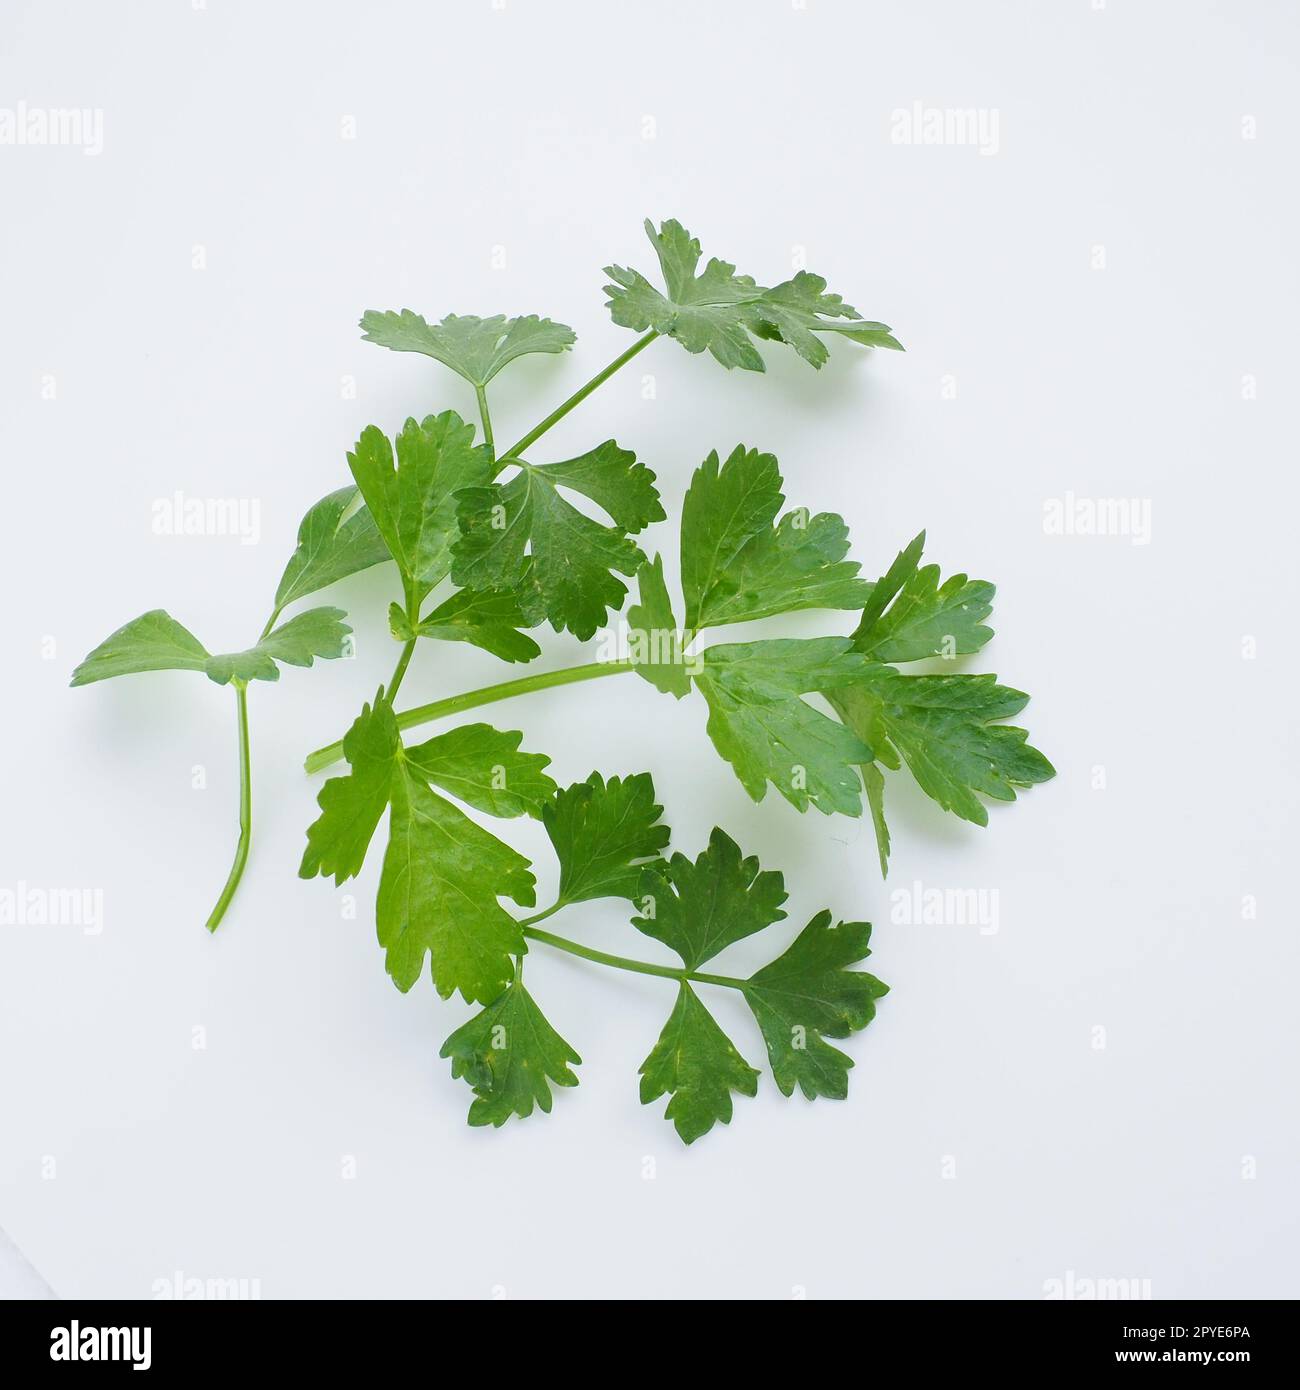 Petroselinum crispum, ein- bis zweijährige Pflanzen-Schirmfamilie Umbelliferae. Apium graveolens ist eine zweijährige Pflanze Apiaceae, eine Gemüsepflanze. Weißer Hintergrund. Stockfoto